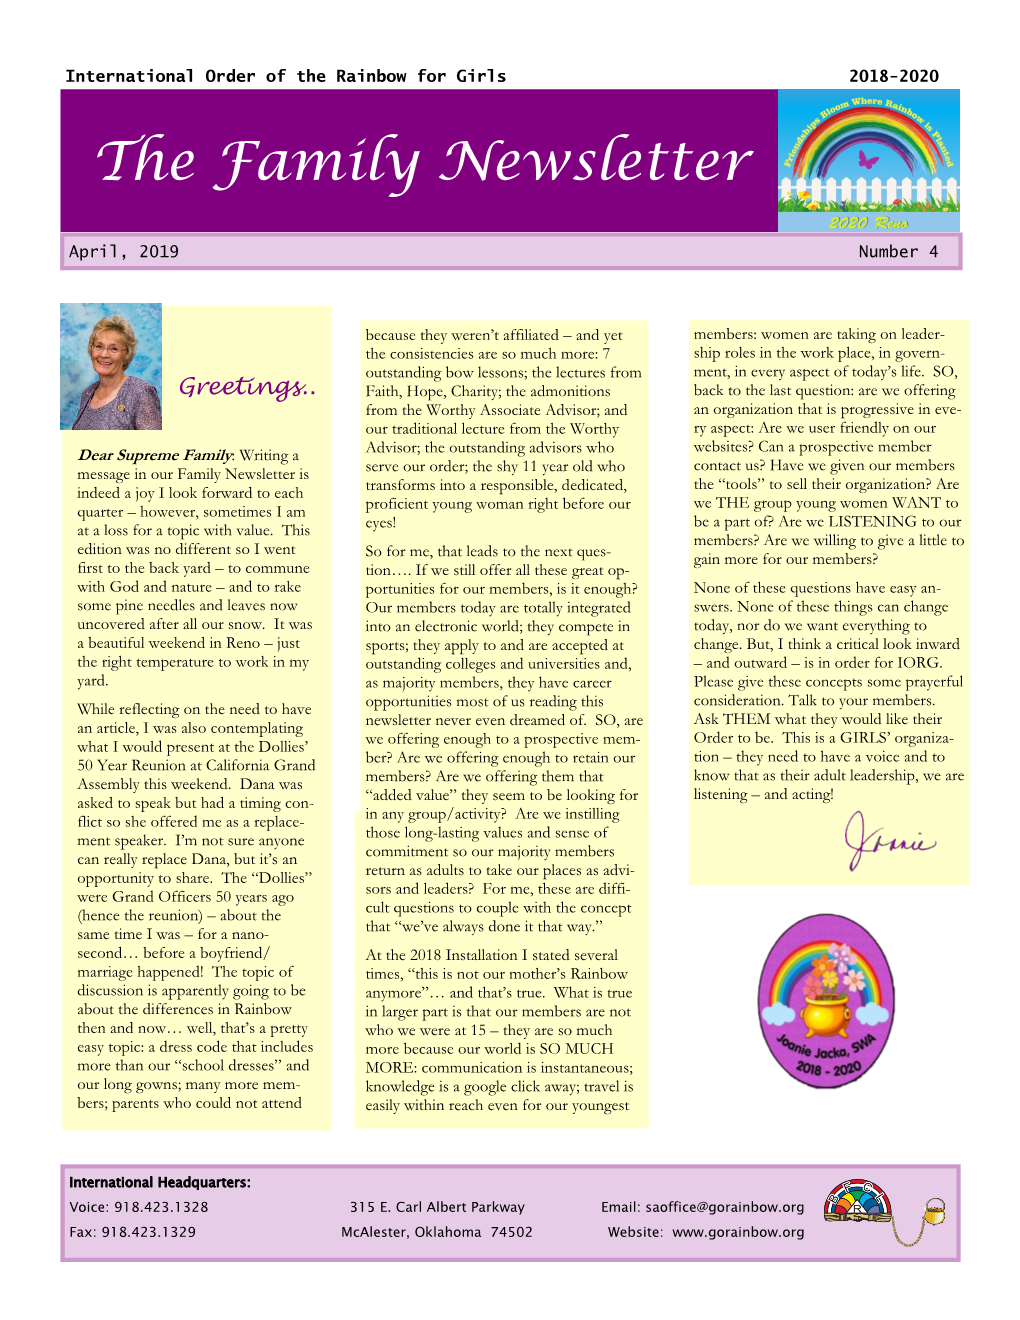 The Family Newsletter